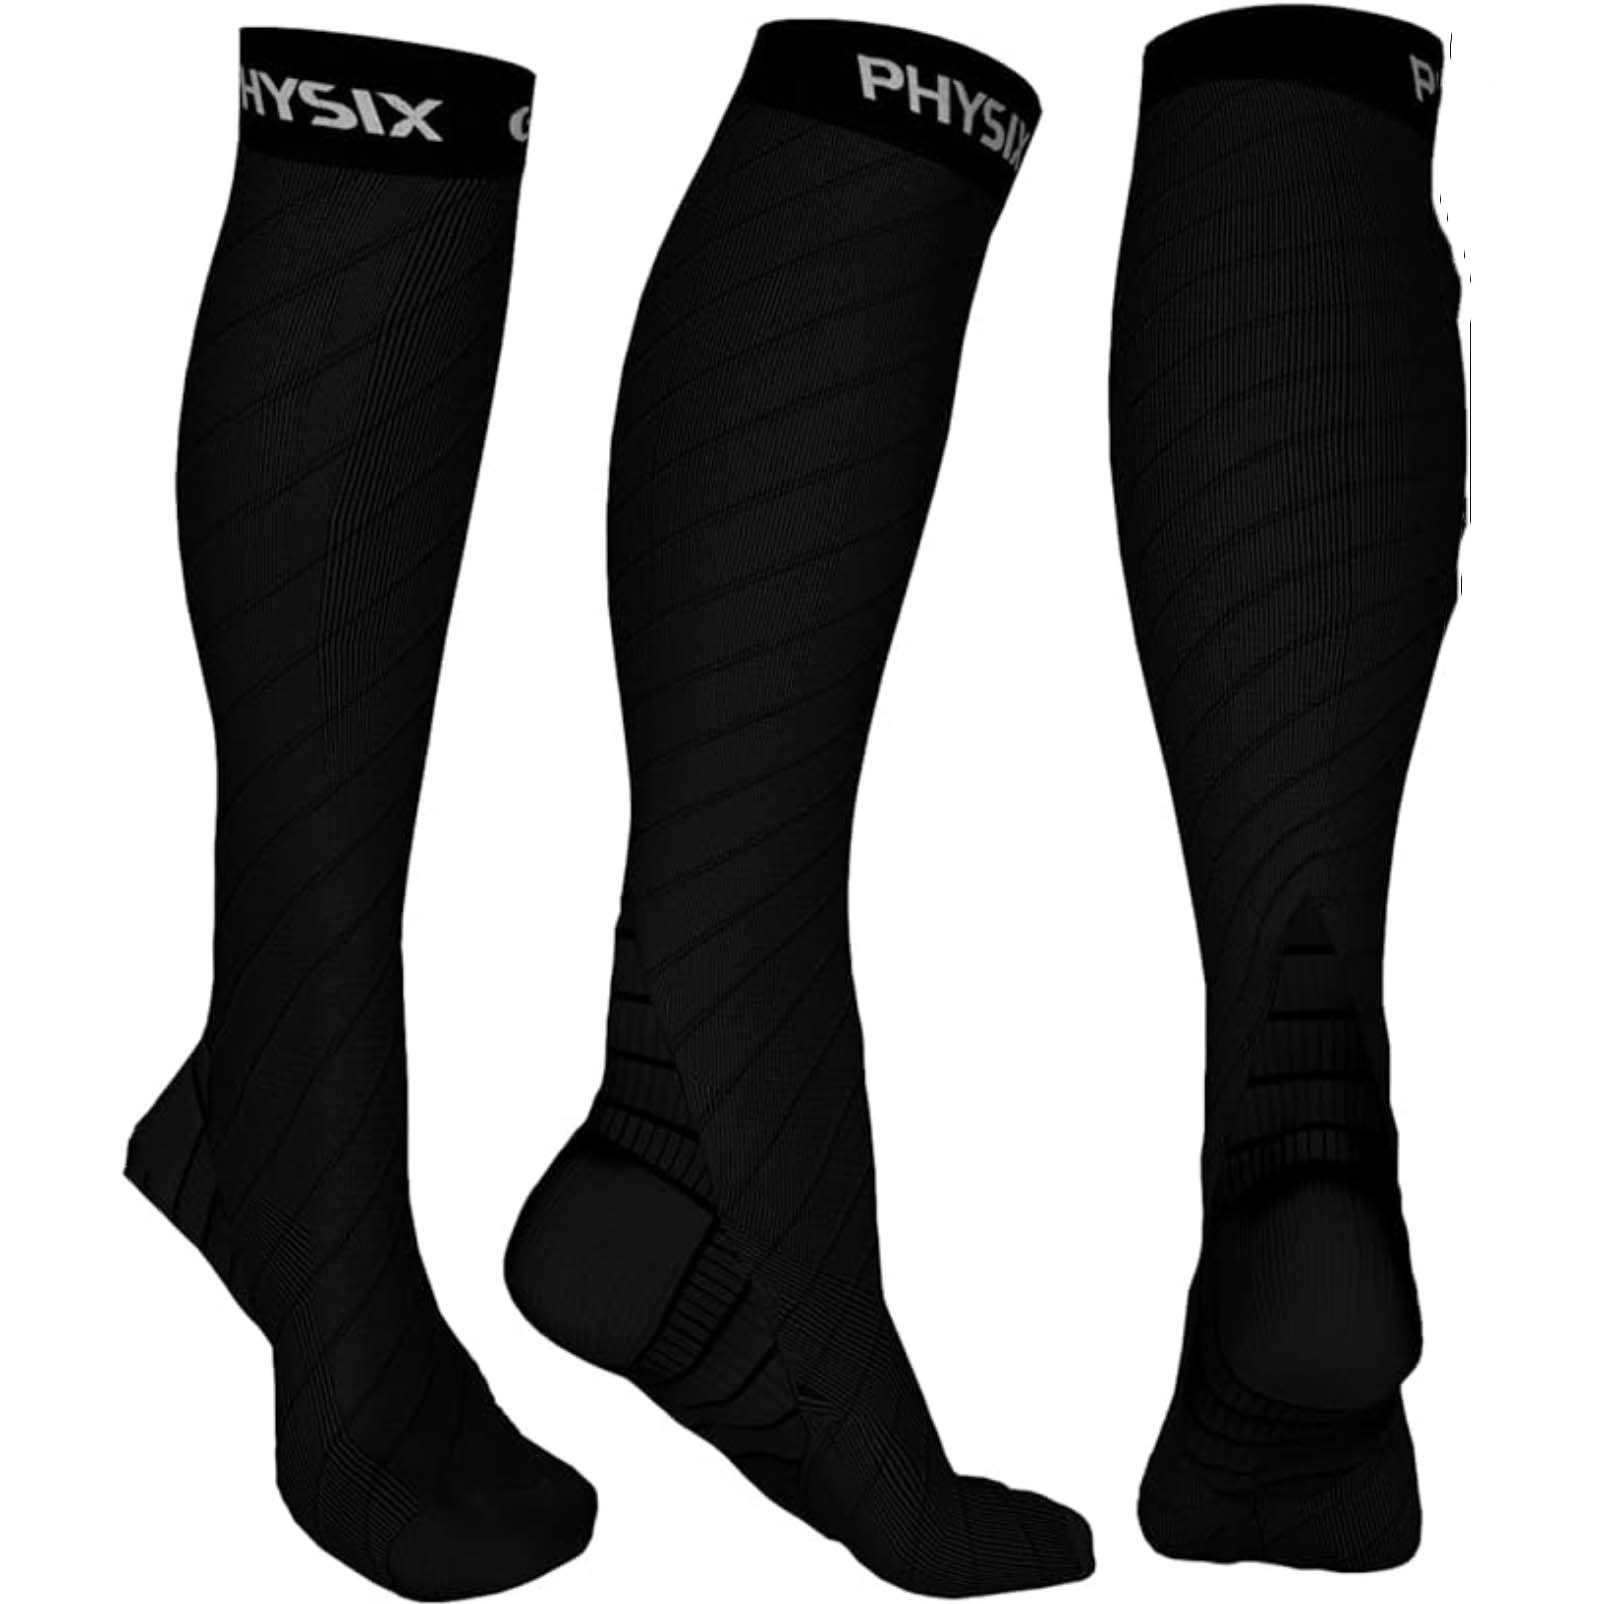 Three black knee-high socks